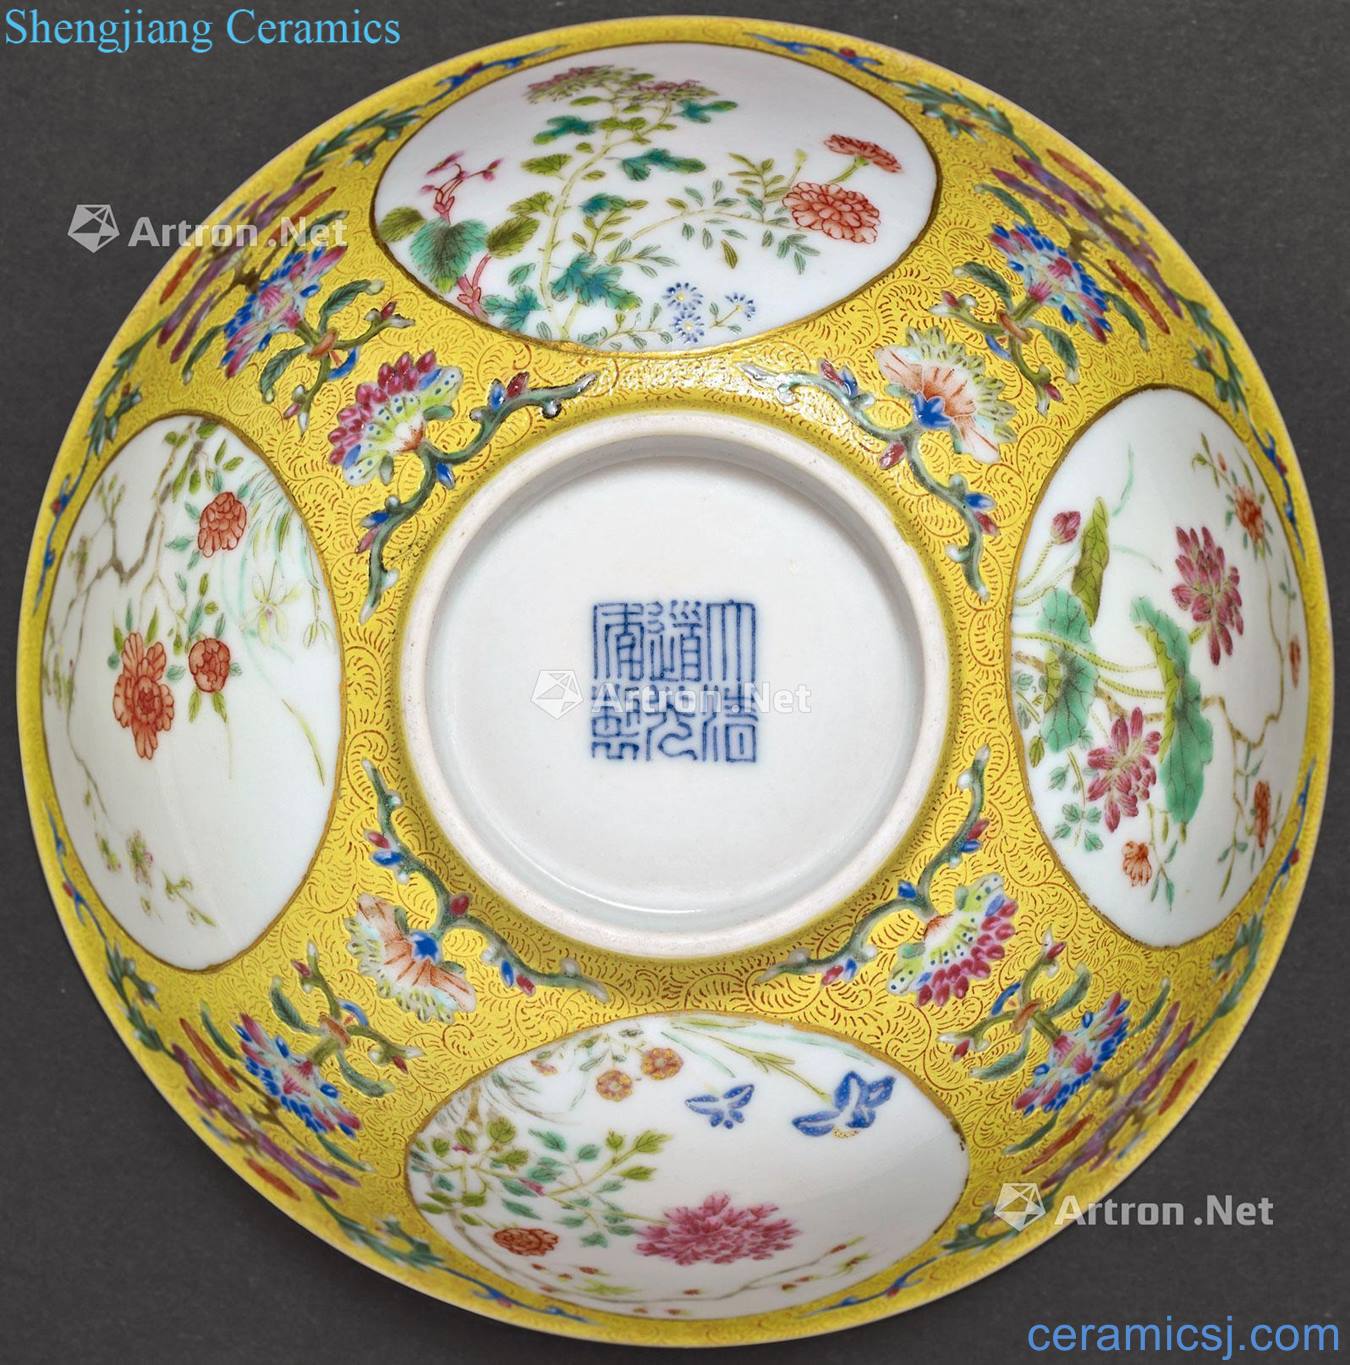 Qing daoguang Huang famille rose medallion flowers green-splashed bowls